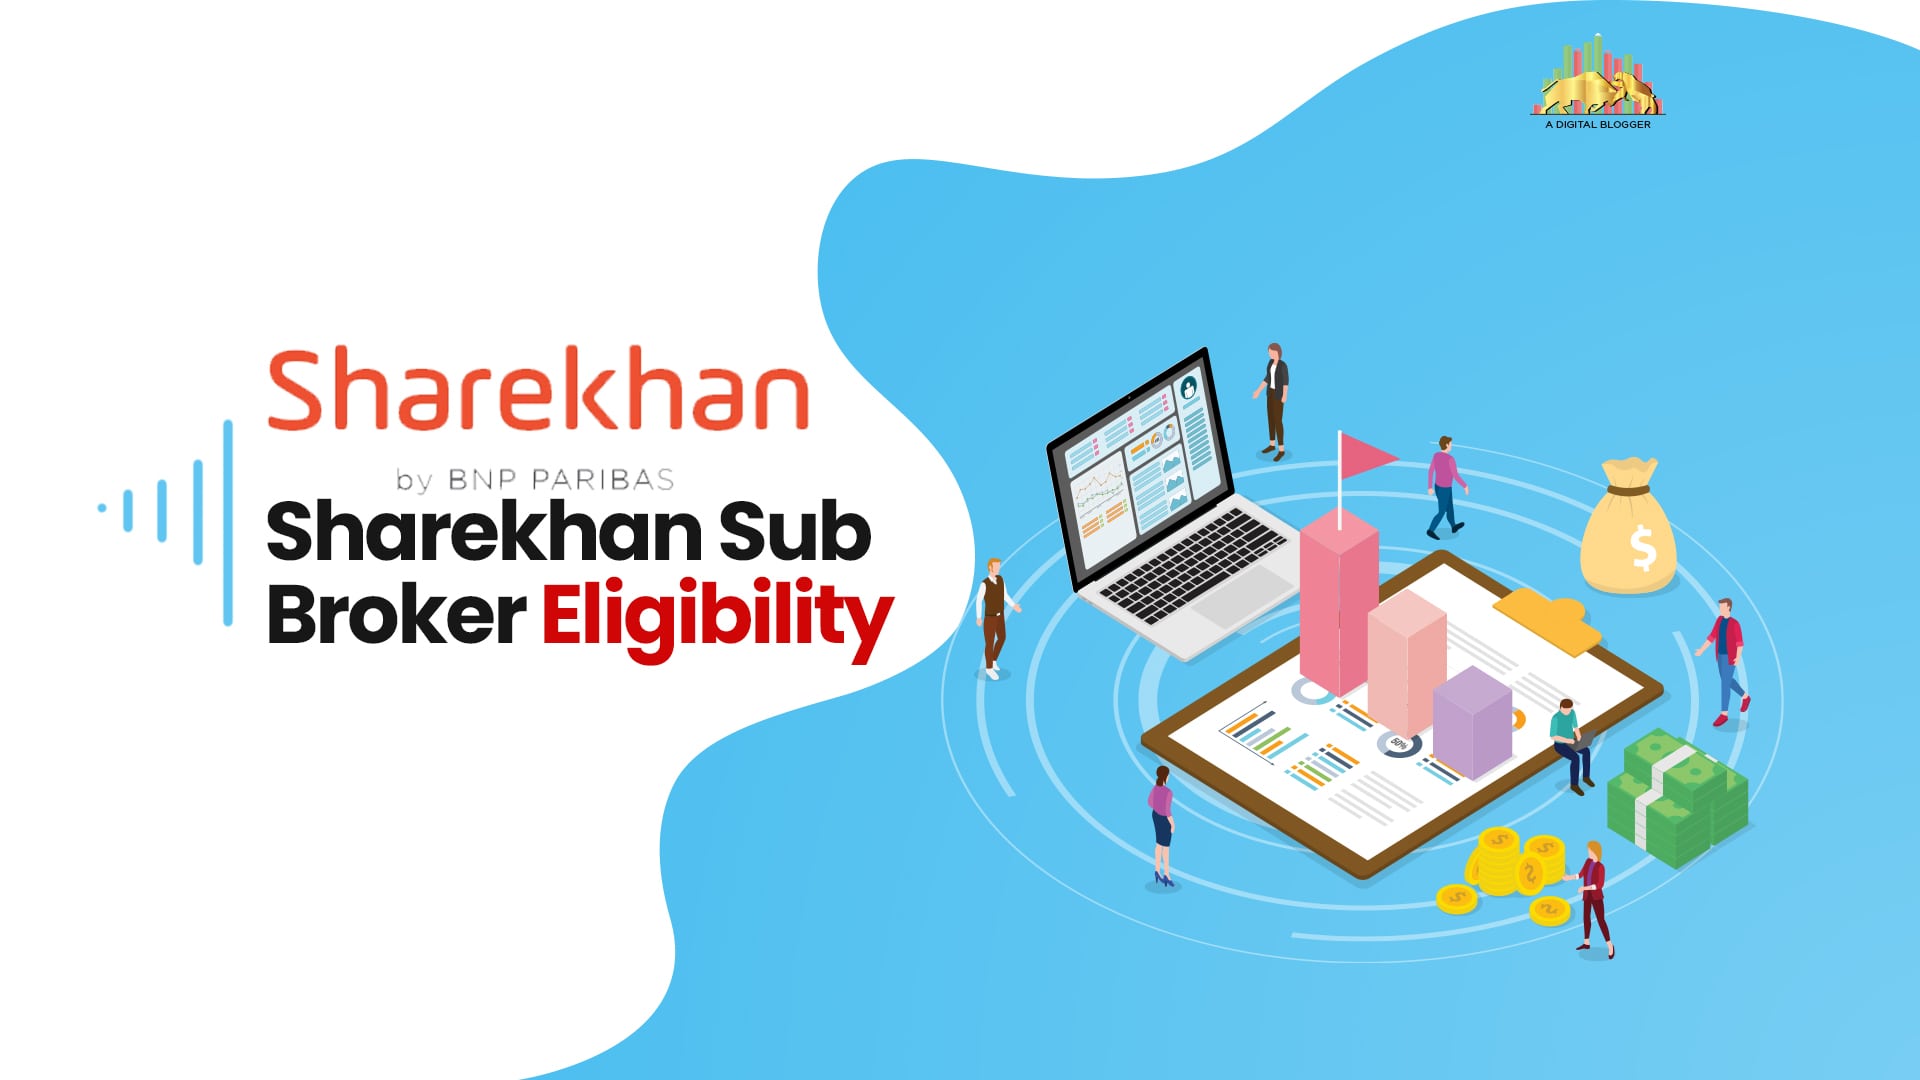 Sharekhan sub broker eligibility details